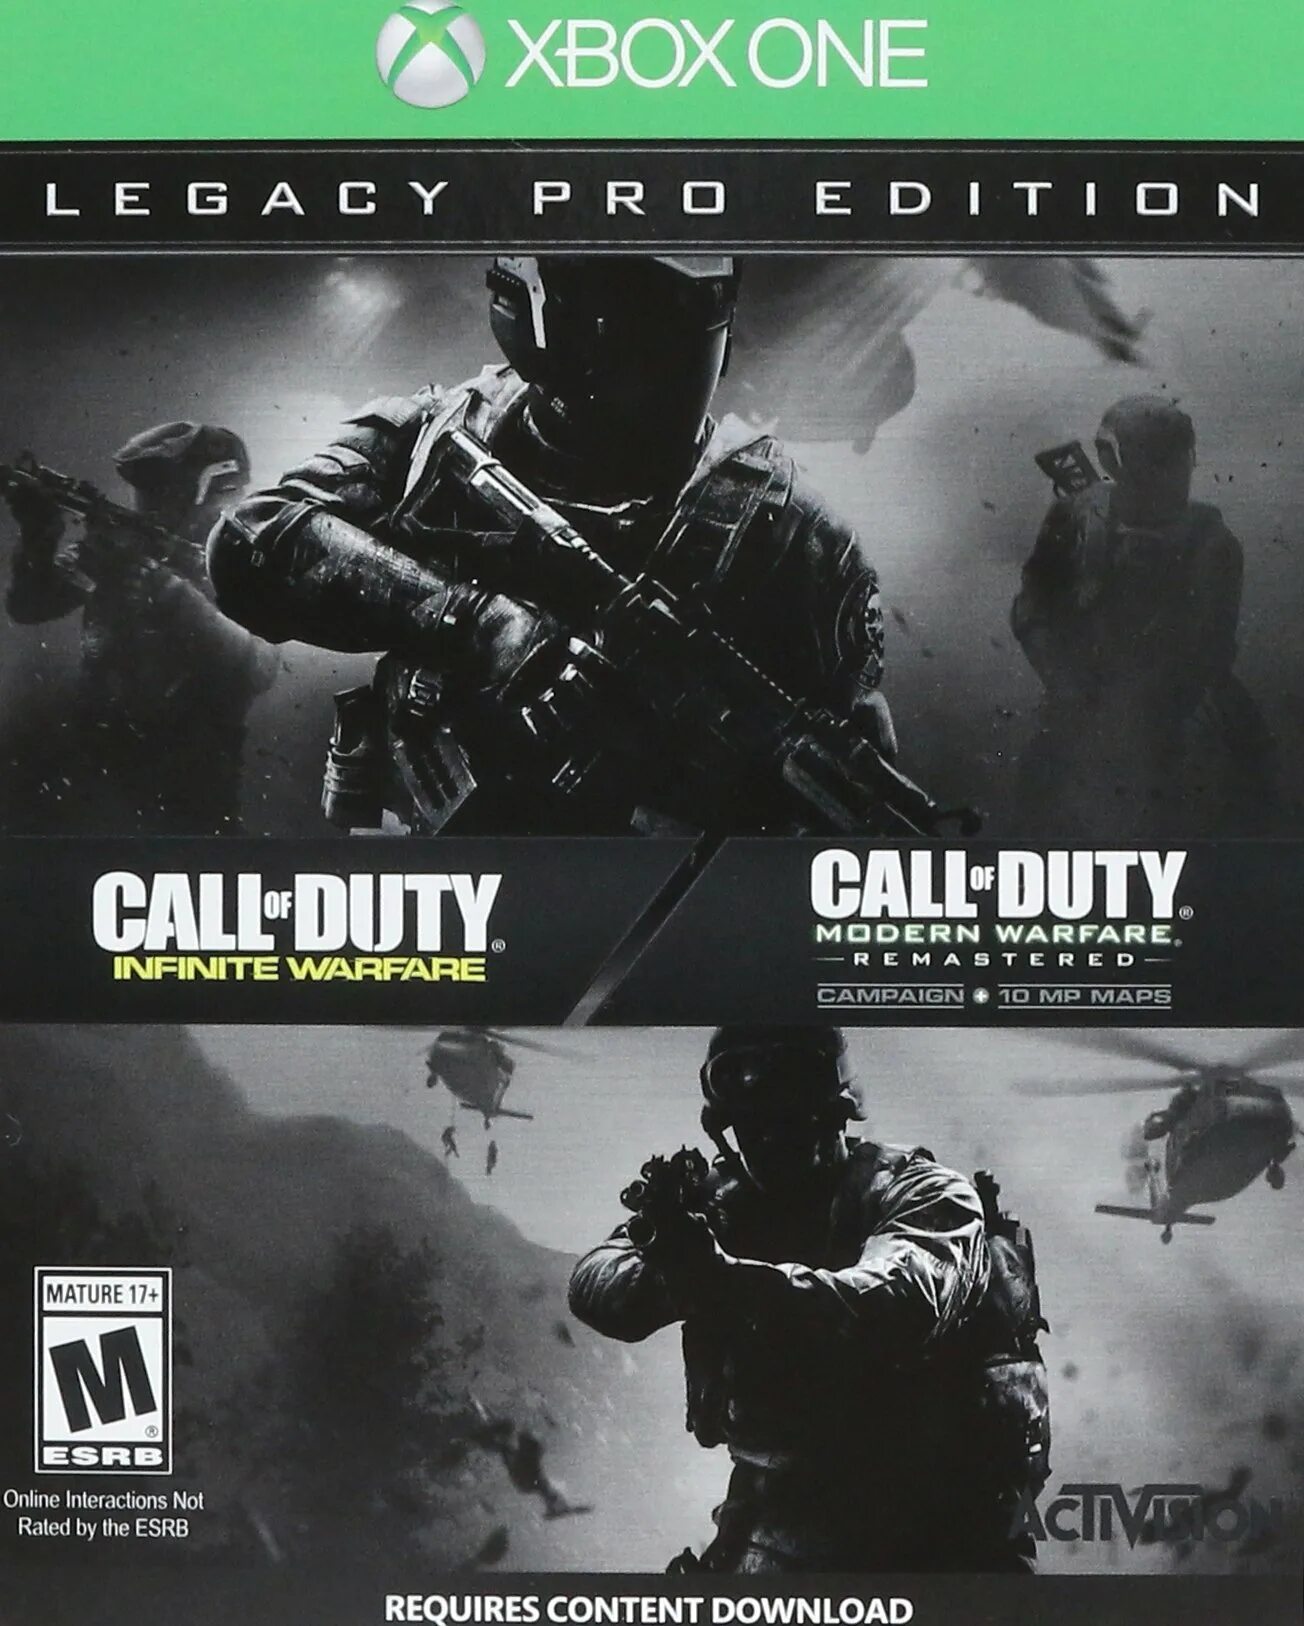 Call of Duty Infinite Warfare Legacy Edition ps4. Call of Duty Infinite Warfare Xbox. Call of Duty Xbox one. Call of Duty: Infinite Warfare Digital Legacy Edition. Call of duty modern warfare xbox купить